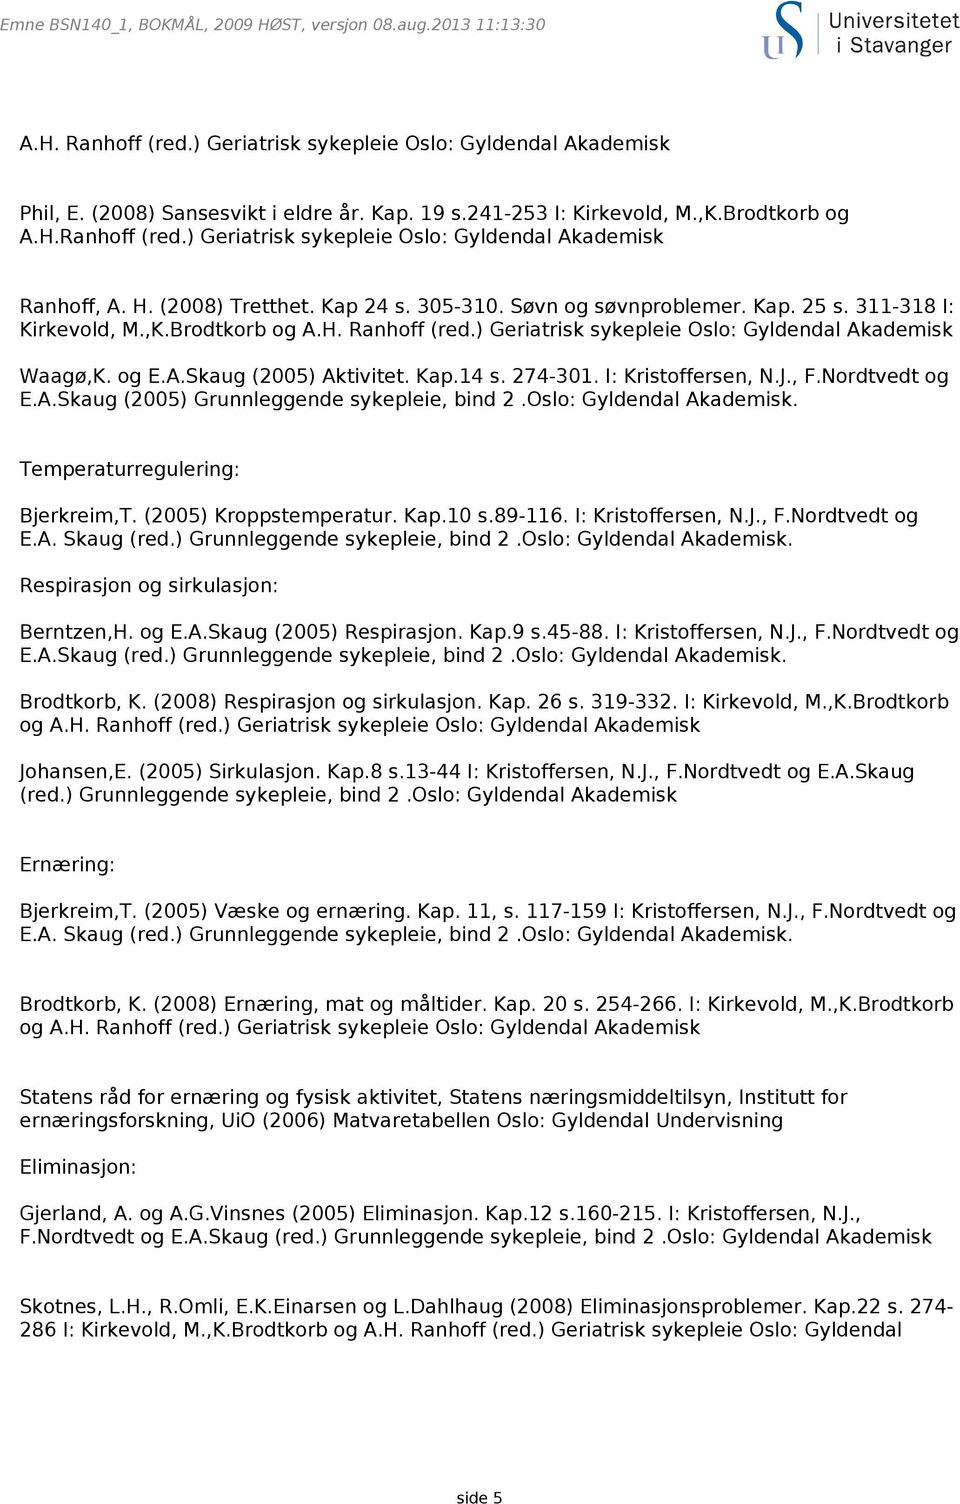 Kap.14 s. 274-301. I: Kristoffersen, N.J., F.Nordtvedt og E.A.Skaug (2005) Grunnleggende sykepleie, bind 2.Oslo: Gyldendal Akademisk. Temperaturregulering: Bjerkreim,T. (2005) Kroppstemperatur. Kap.